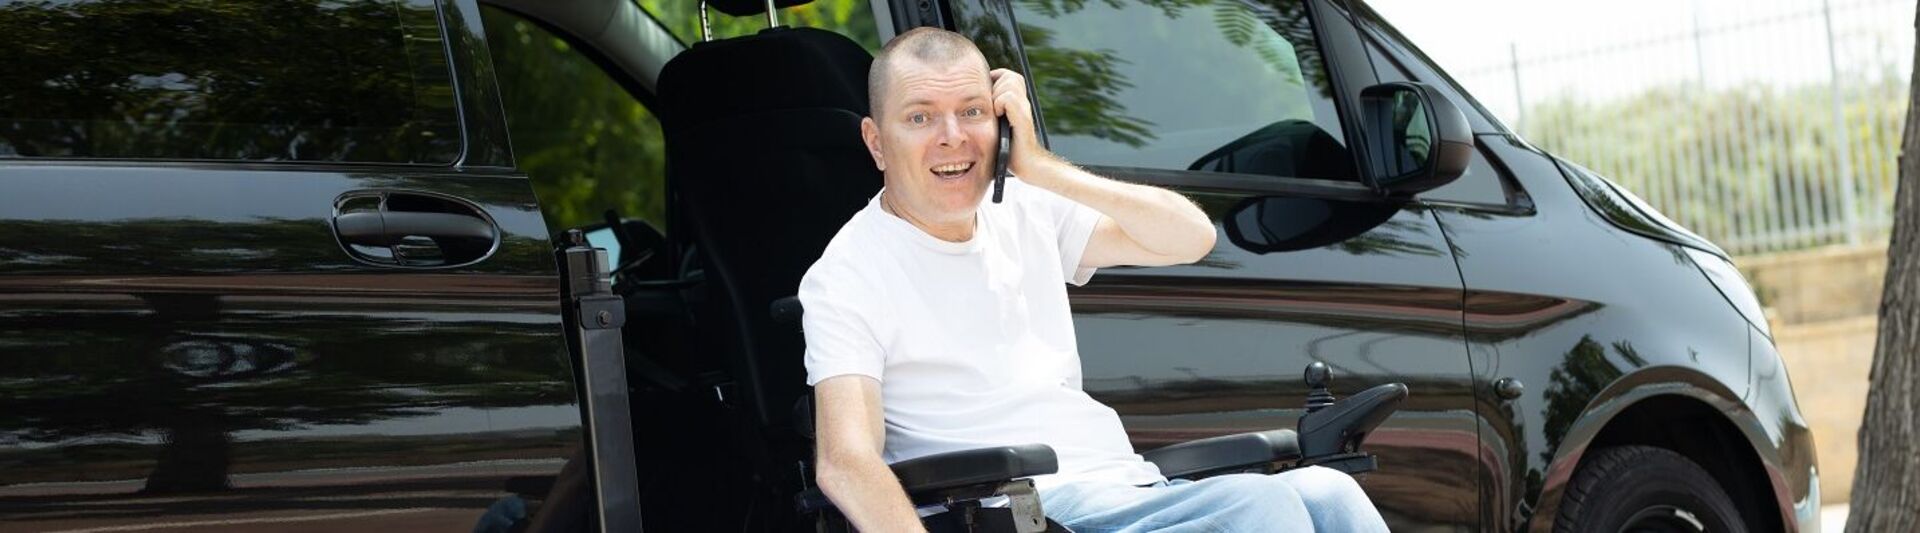 Behindertengerechtes Auto: Rollstuhlfahrer benutzt Lift am Auto